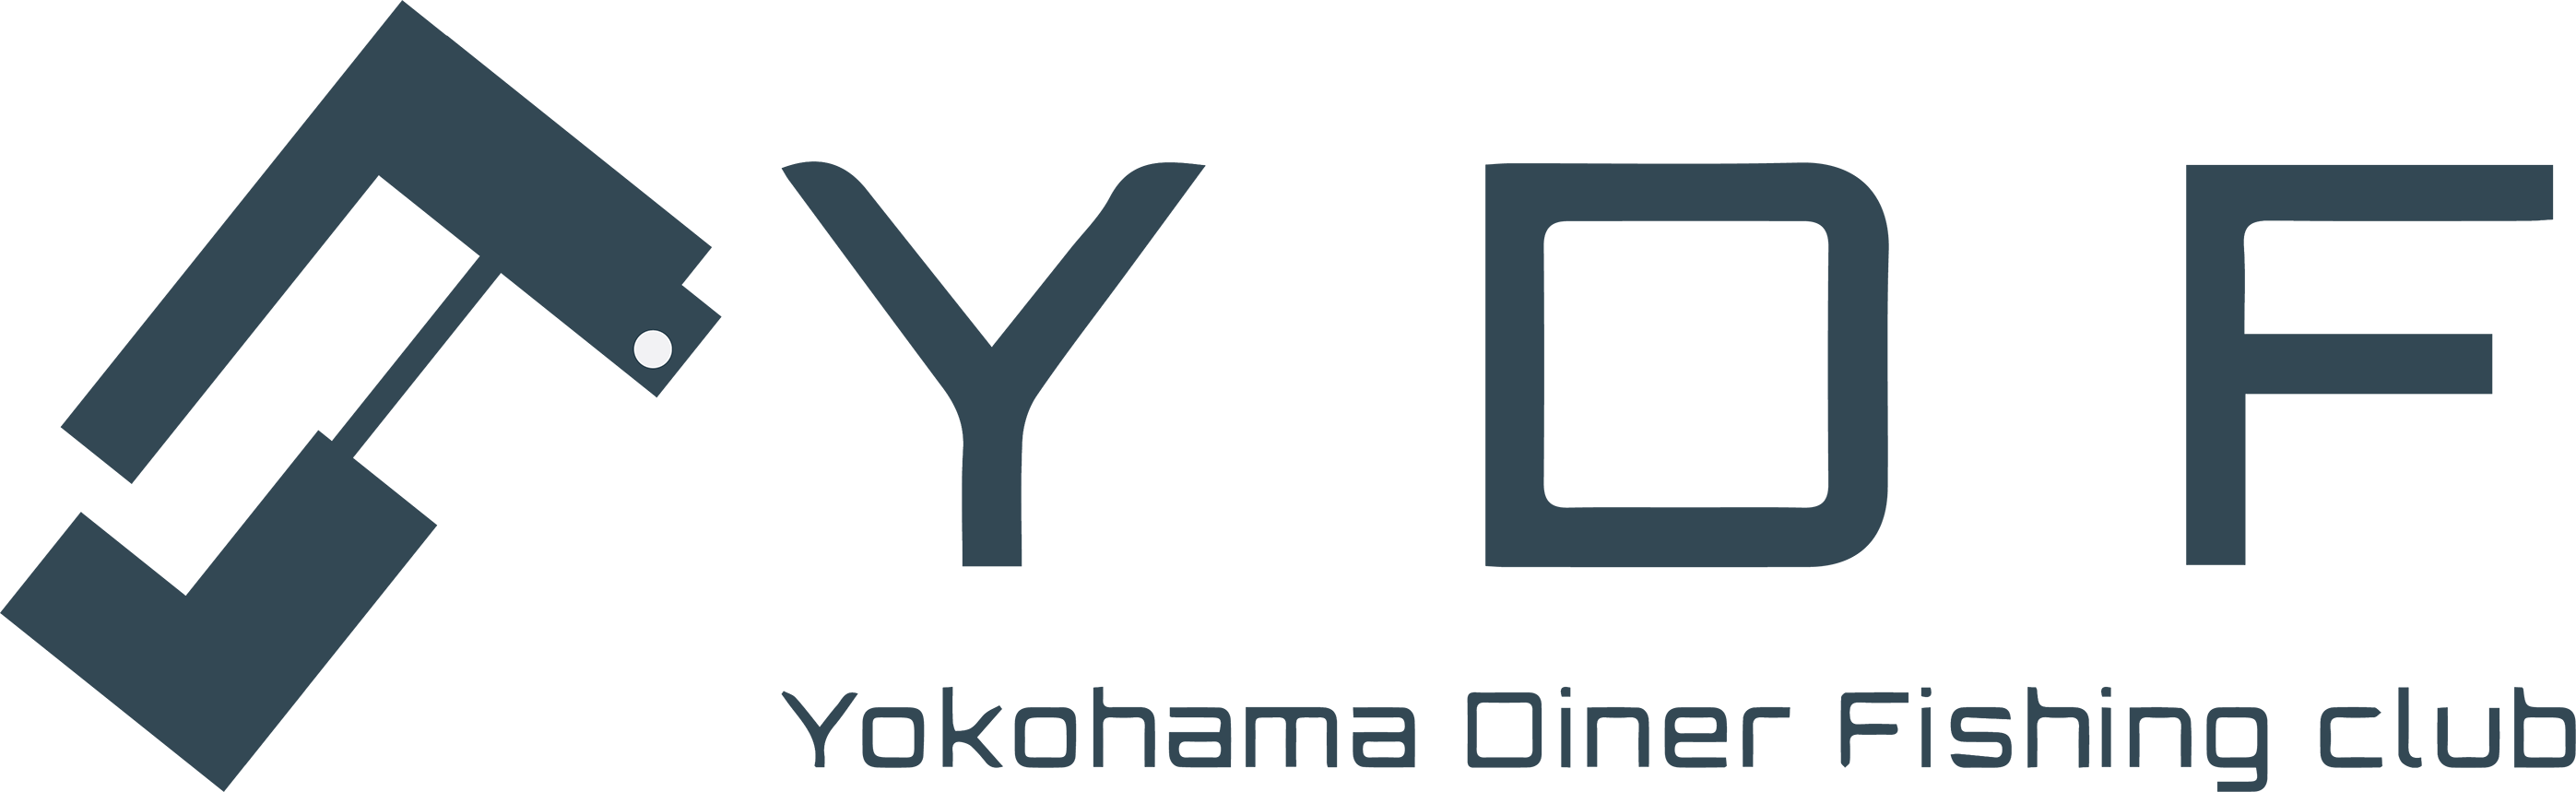 ydf_logo